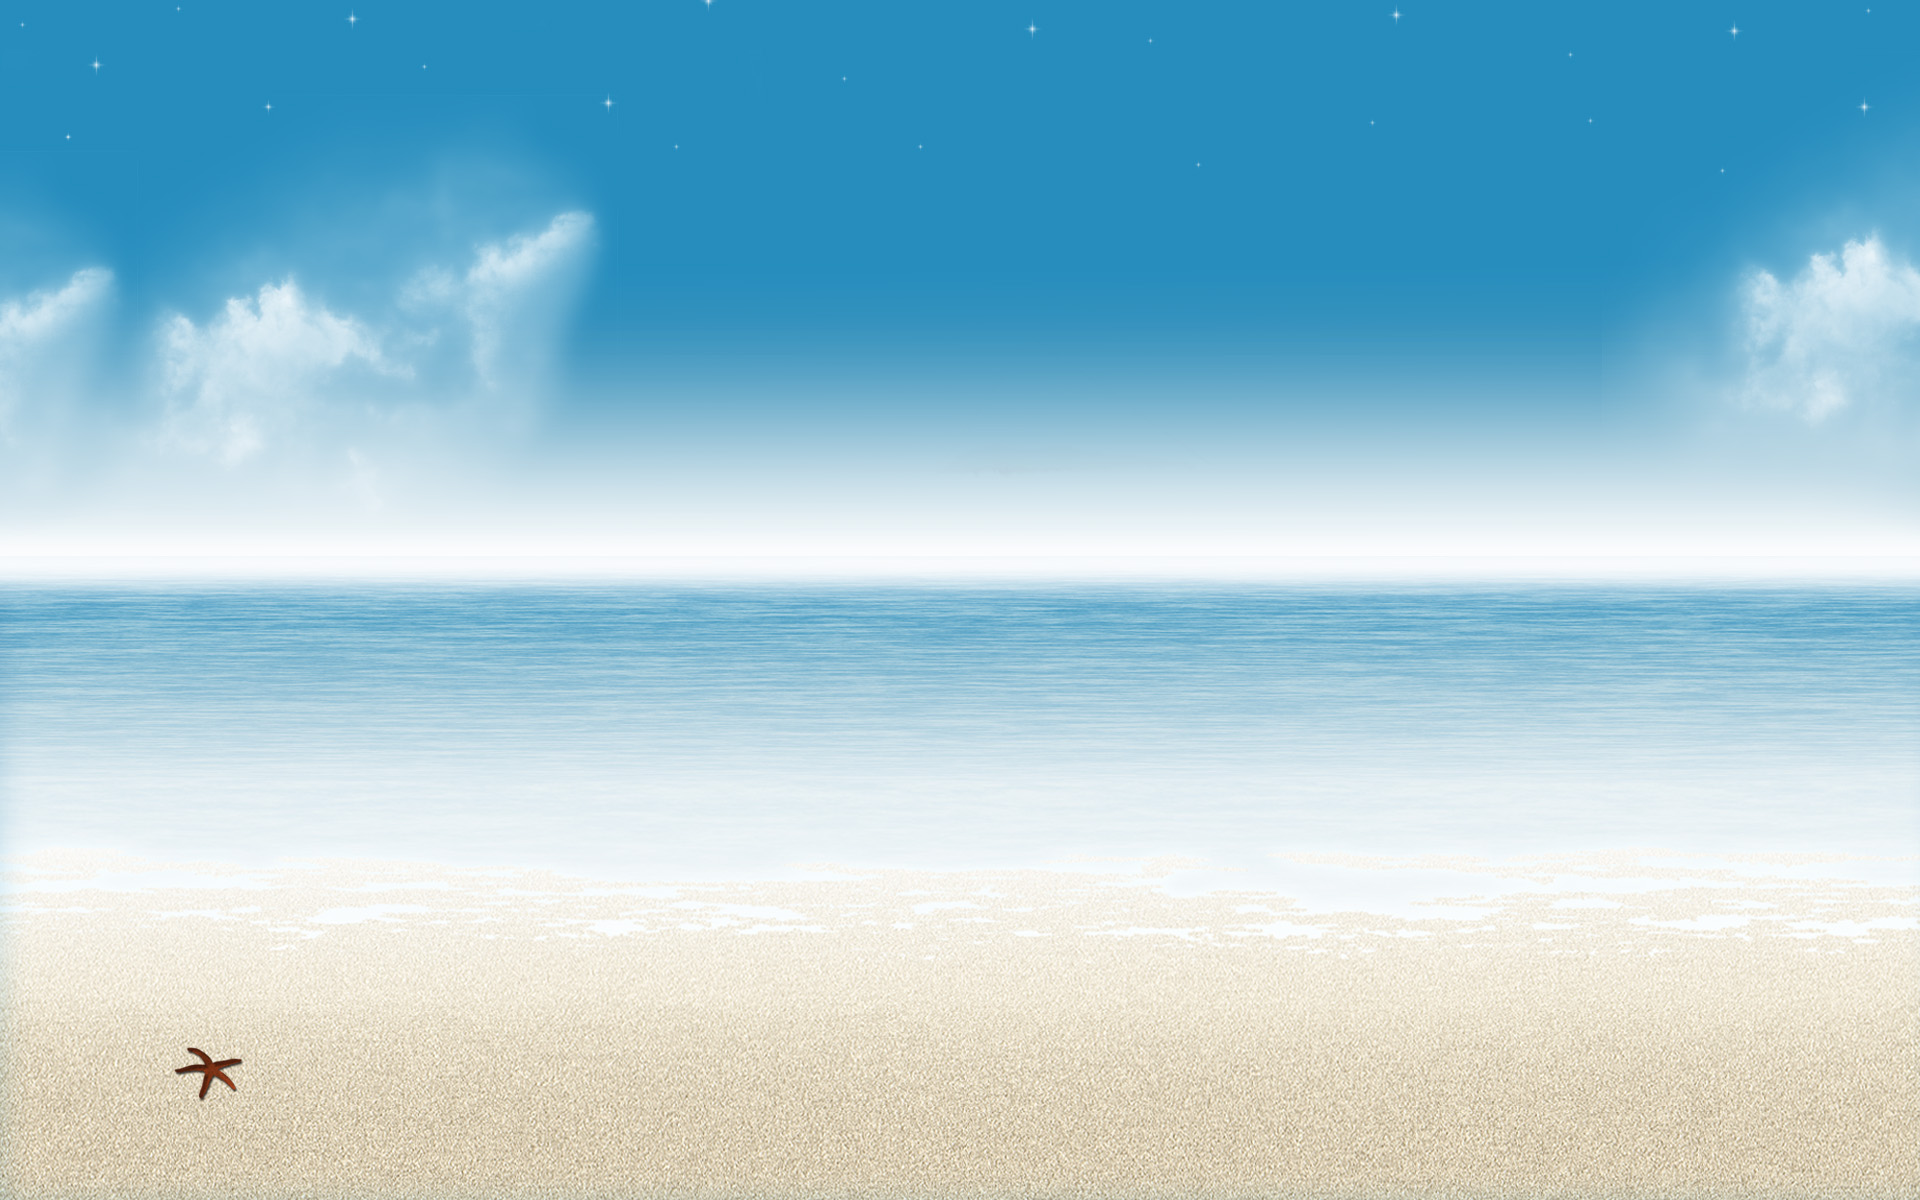 Скачать обои бесплатно Вода, Море, Звезды, Пляж, Песок, 3D, Земля/природа картинка на рабочий стол ПК